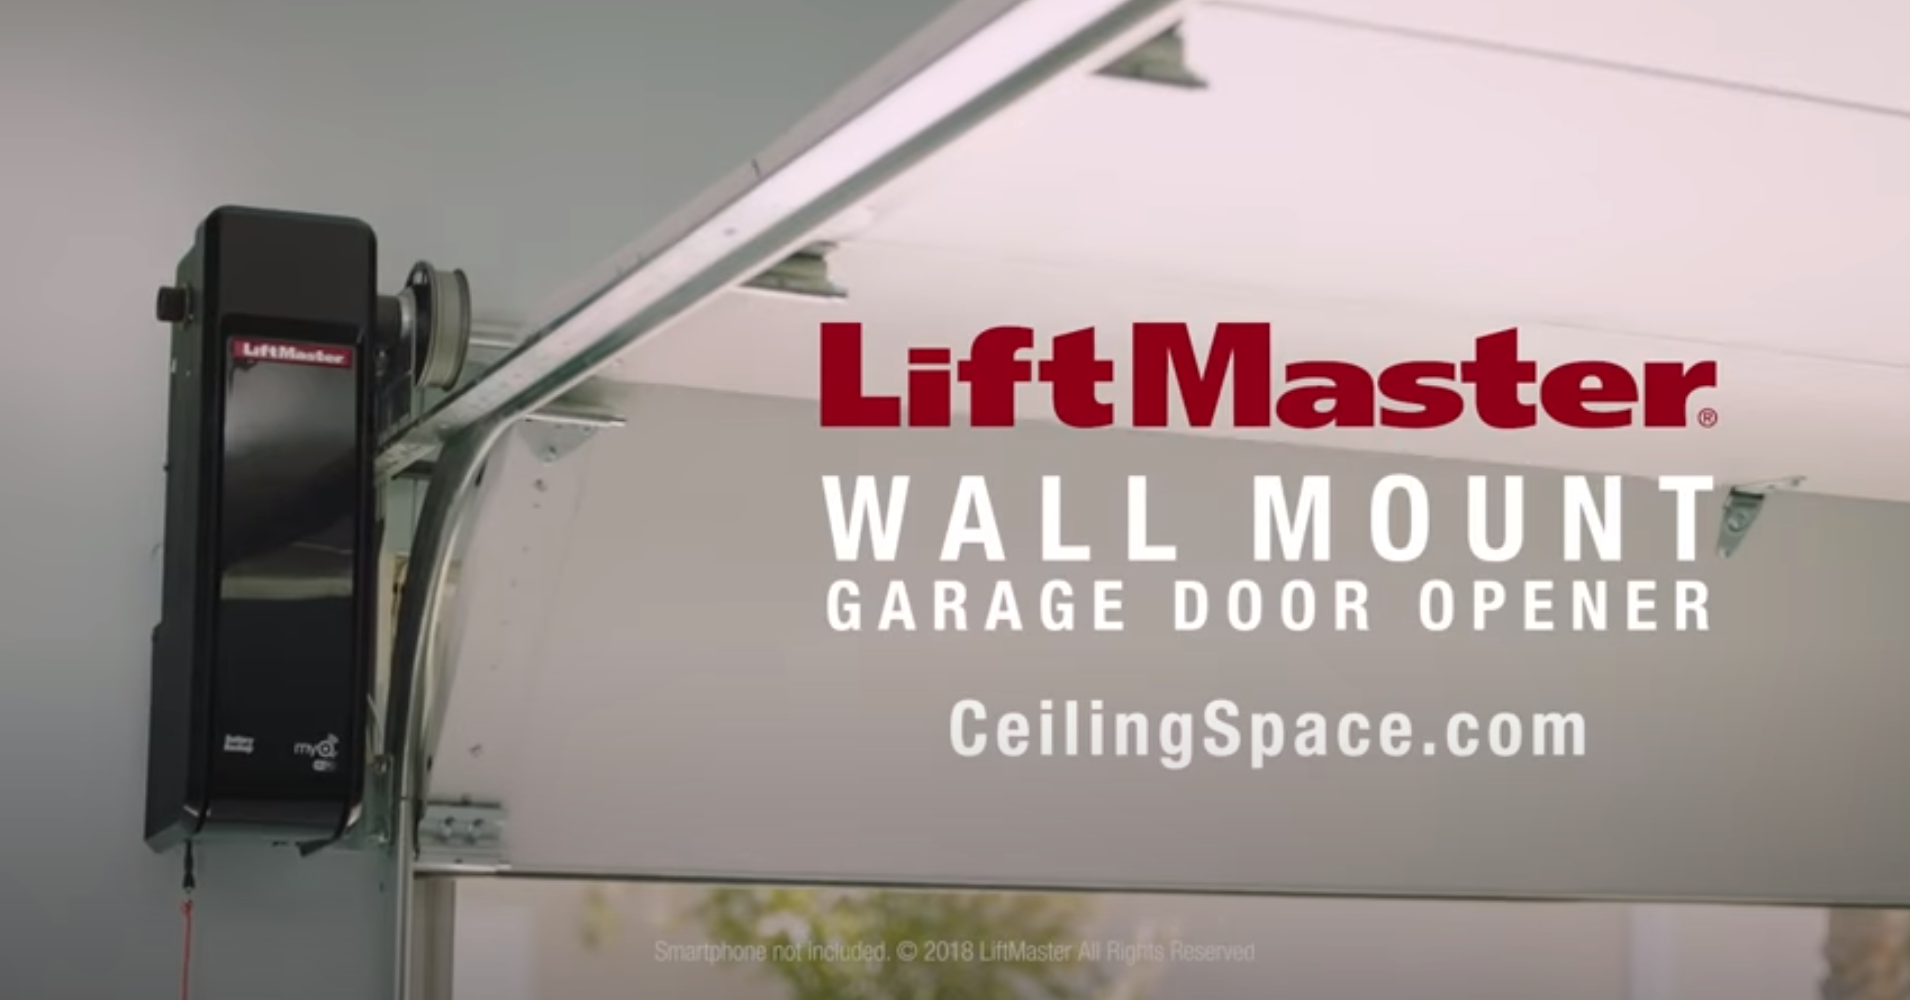 LiftMaster® Wall Mount Garage Door Opener (8500W) - LiftMaster%C2%AE Wall Mount Garage Door Opener 8500W